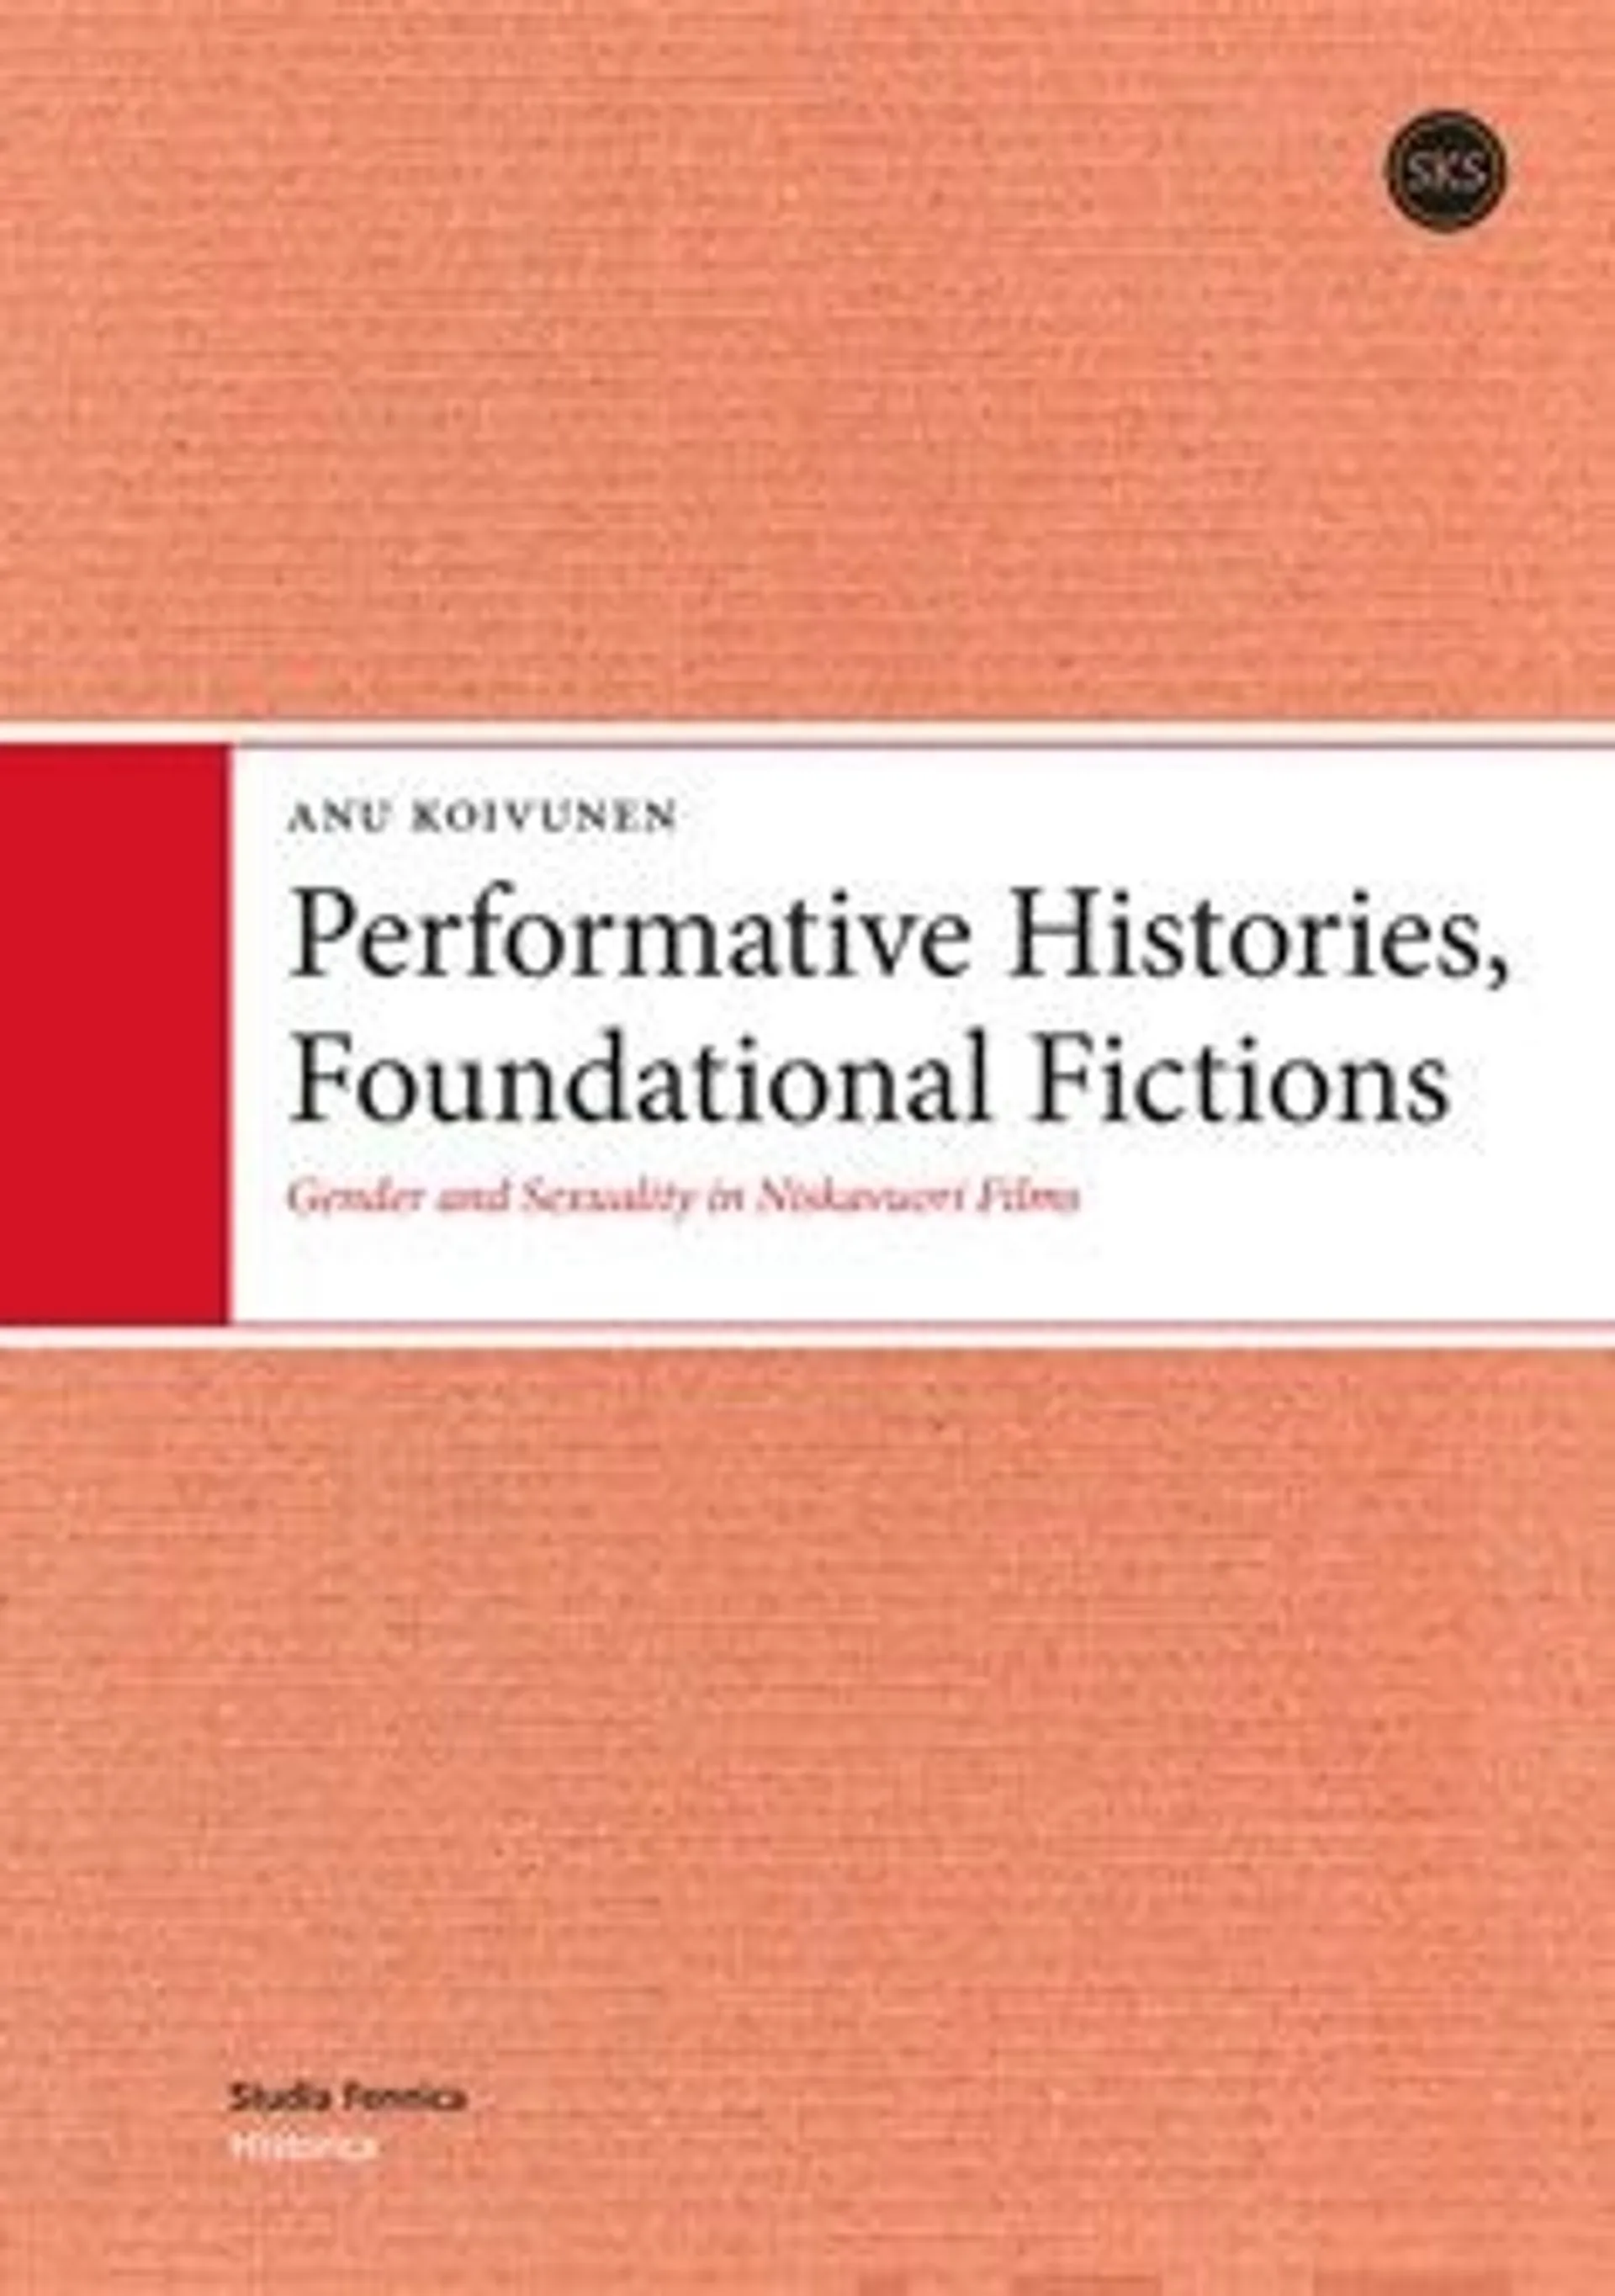 Koivunen, Performative Histories, Foundational Fictions